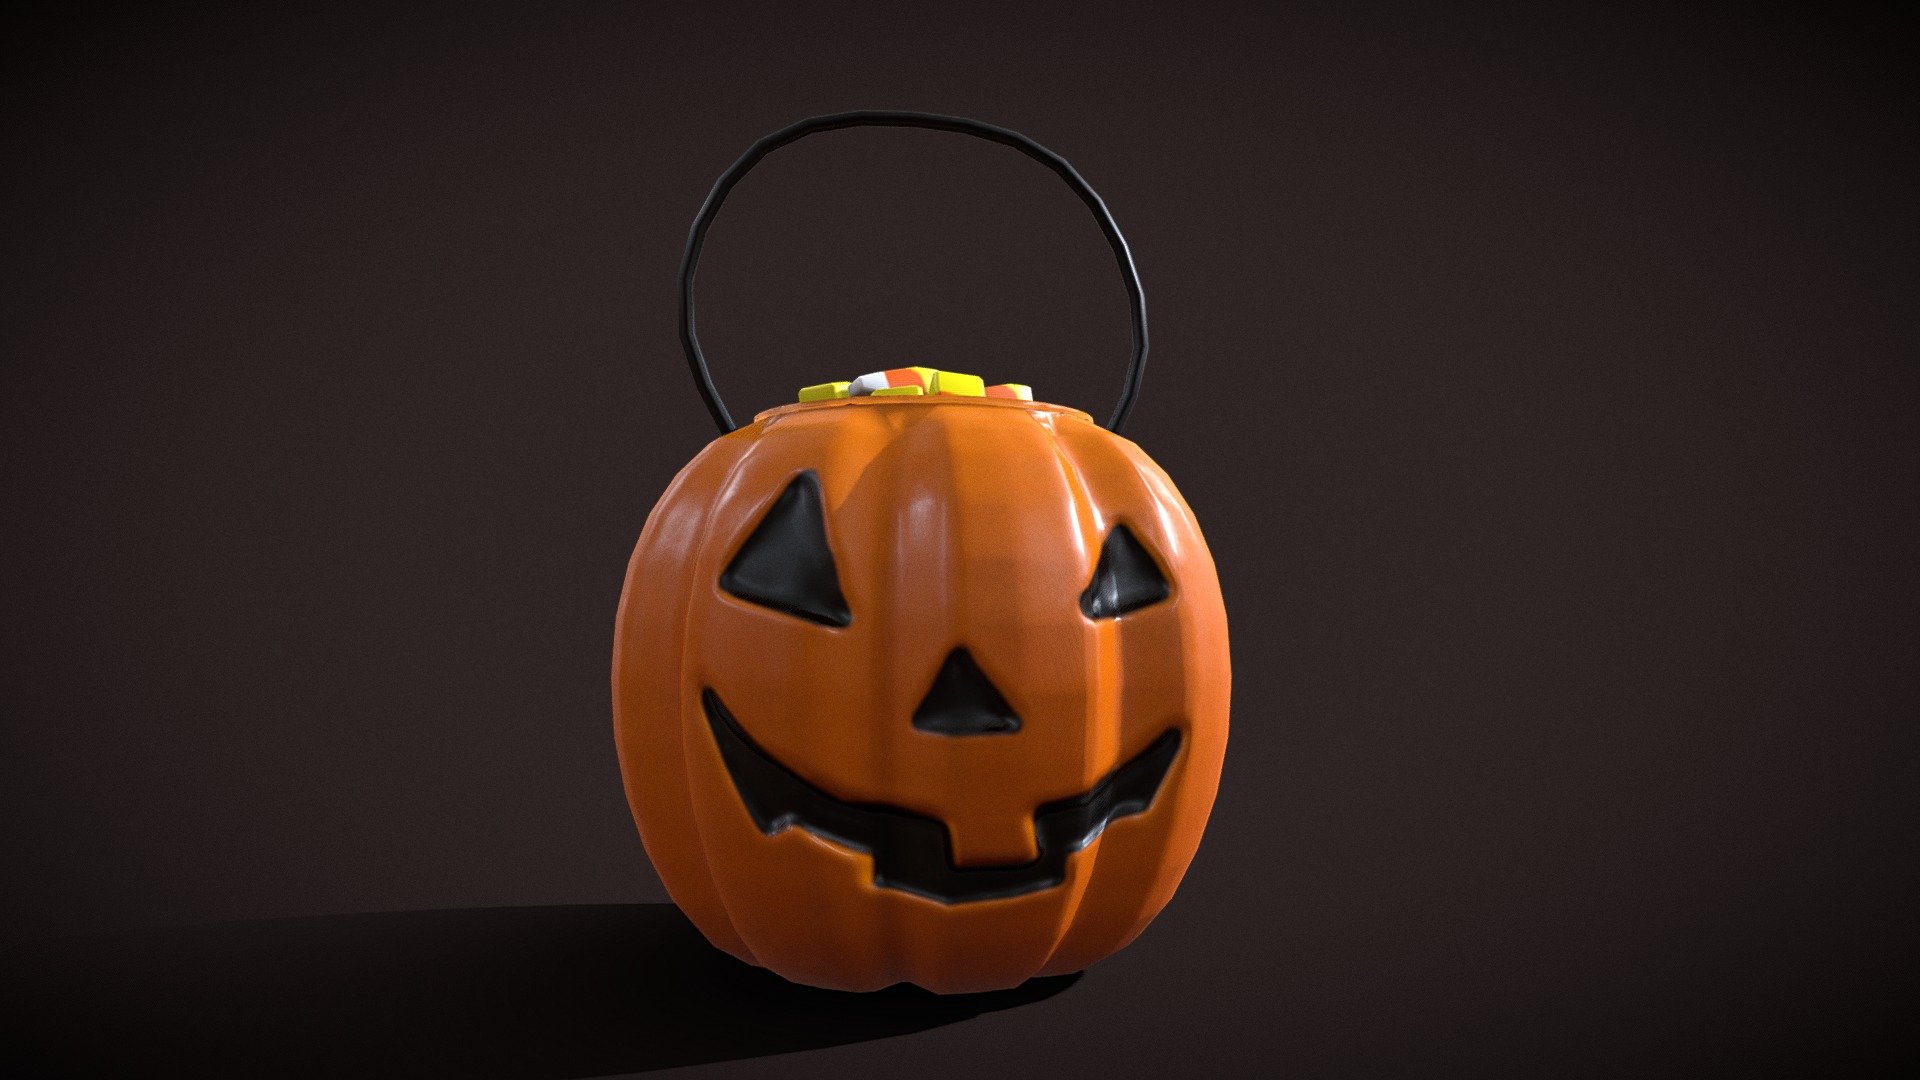 Pumpkin_Candy_Pail pbr texture 4k - Pumpkin_Candy_Pail - Buy Royalty Free 3D model by GetDeadEntertainment 3d model